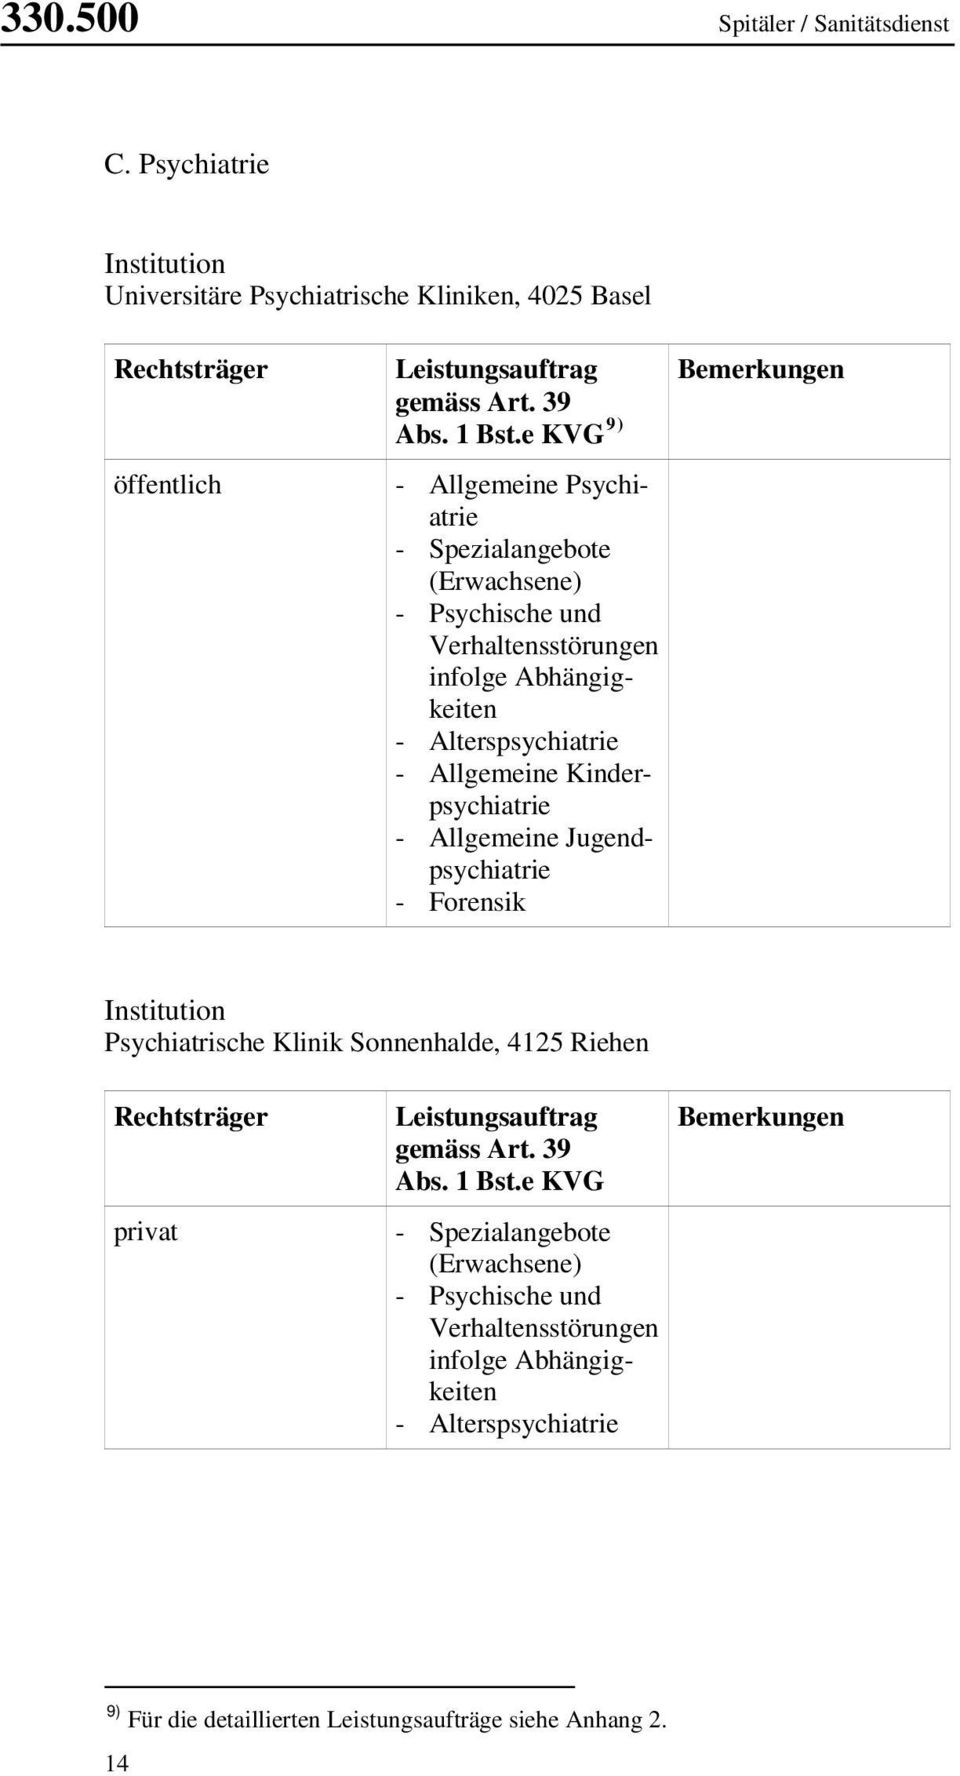 Allgemeine Jugendpsychiatrie - Forensik Bemerkungen Institution Psychiatrische Klinik Sonnenhalde, 4125 Riehen Rechtsträger privat Leistungsauftrag gemäss Art. 39 Abs. 1 Bst.